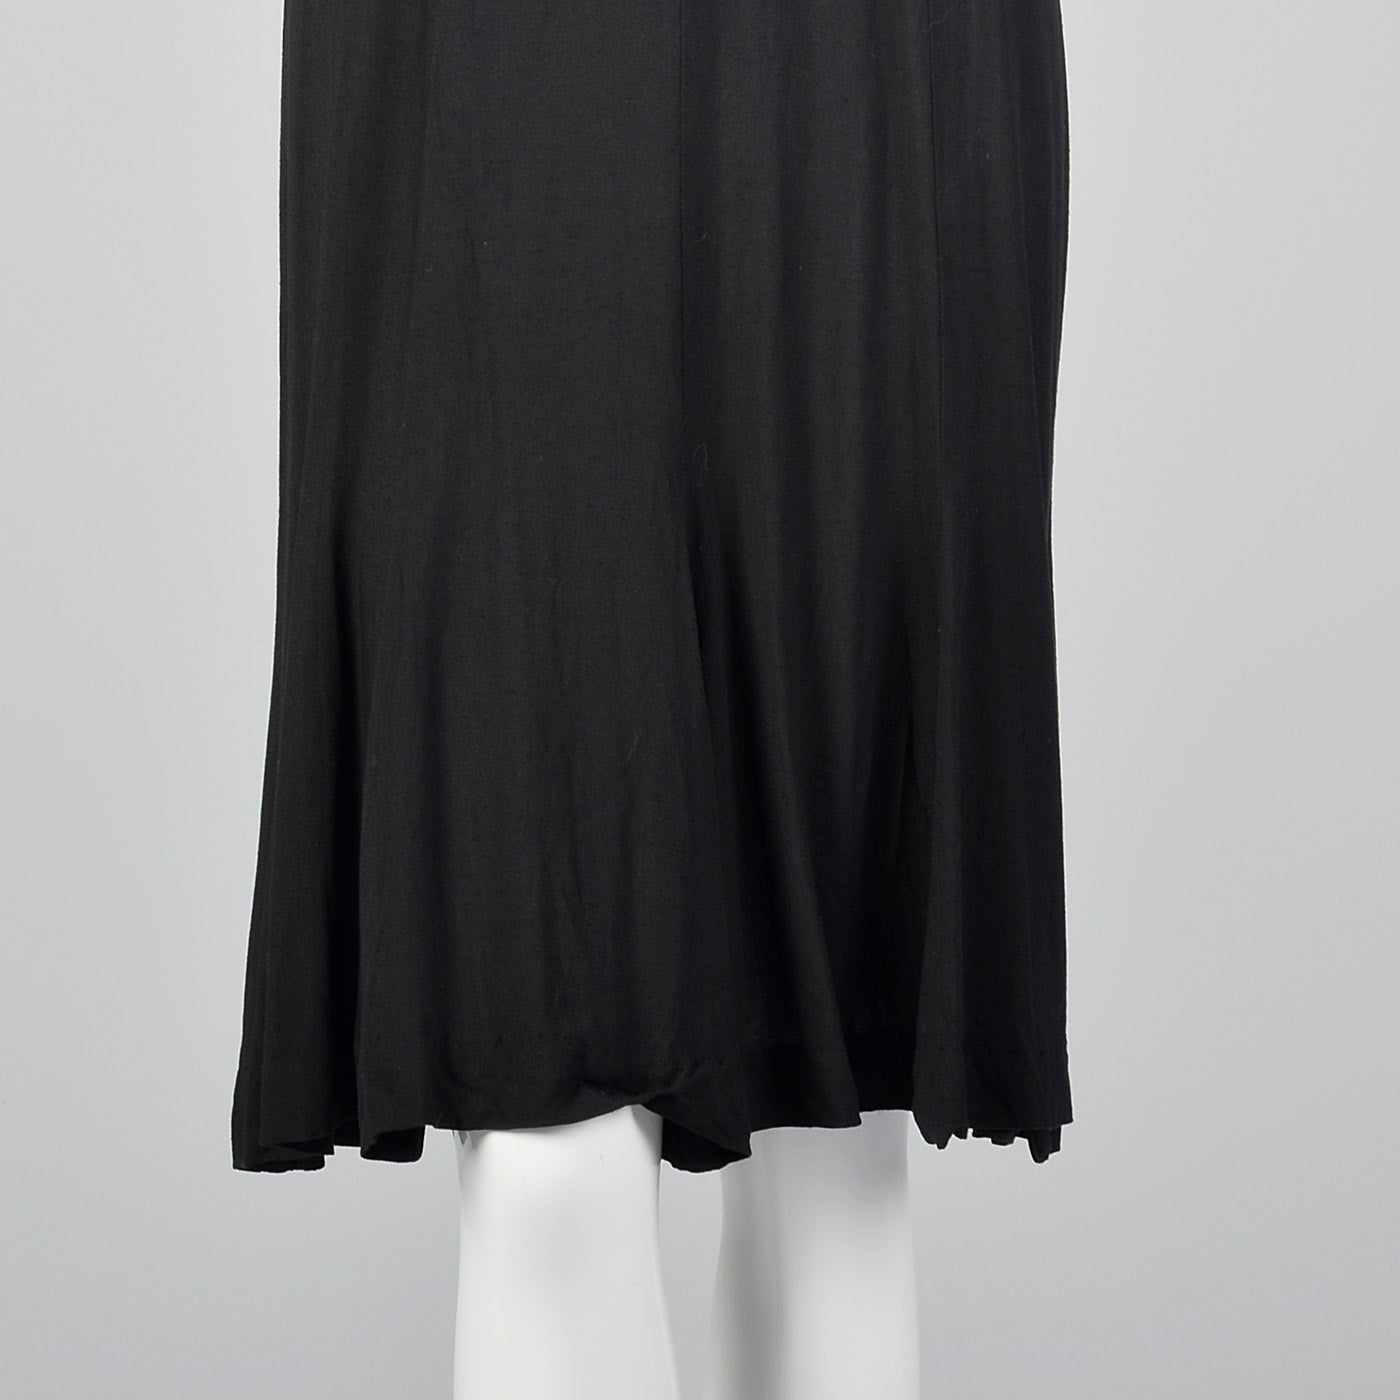 1950s Little Black Dress with Sheer Crochet Neckline